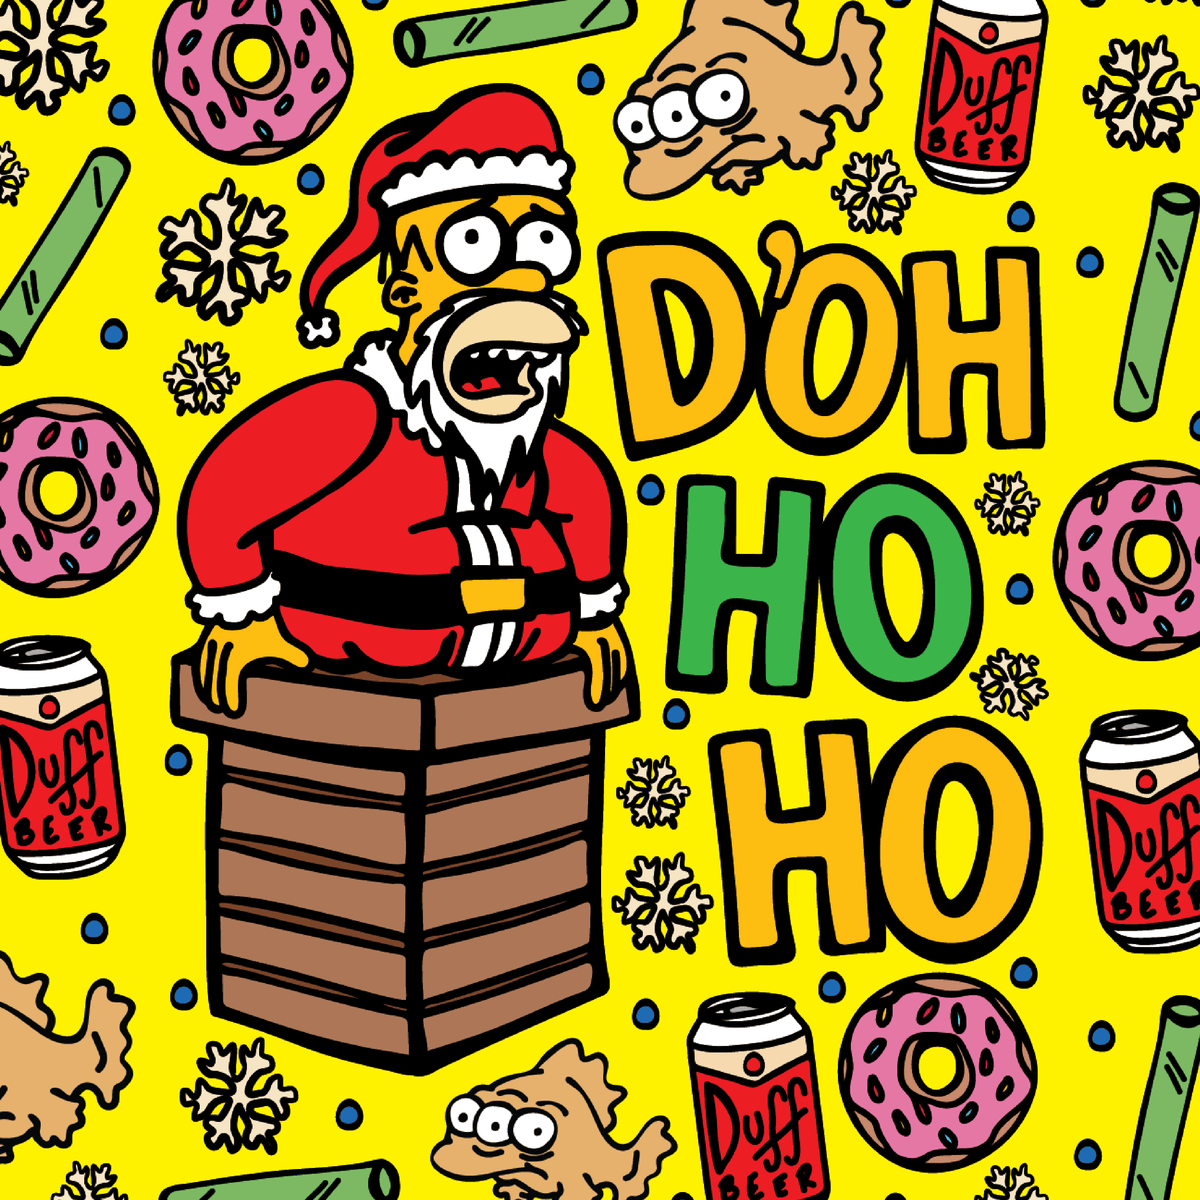 Doh Ho Ho 🎅🍩 – Stubby Holder